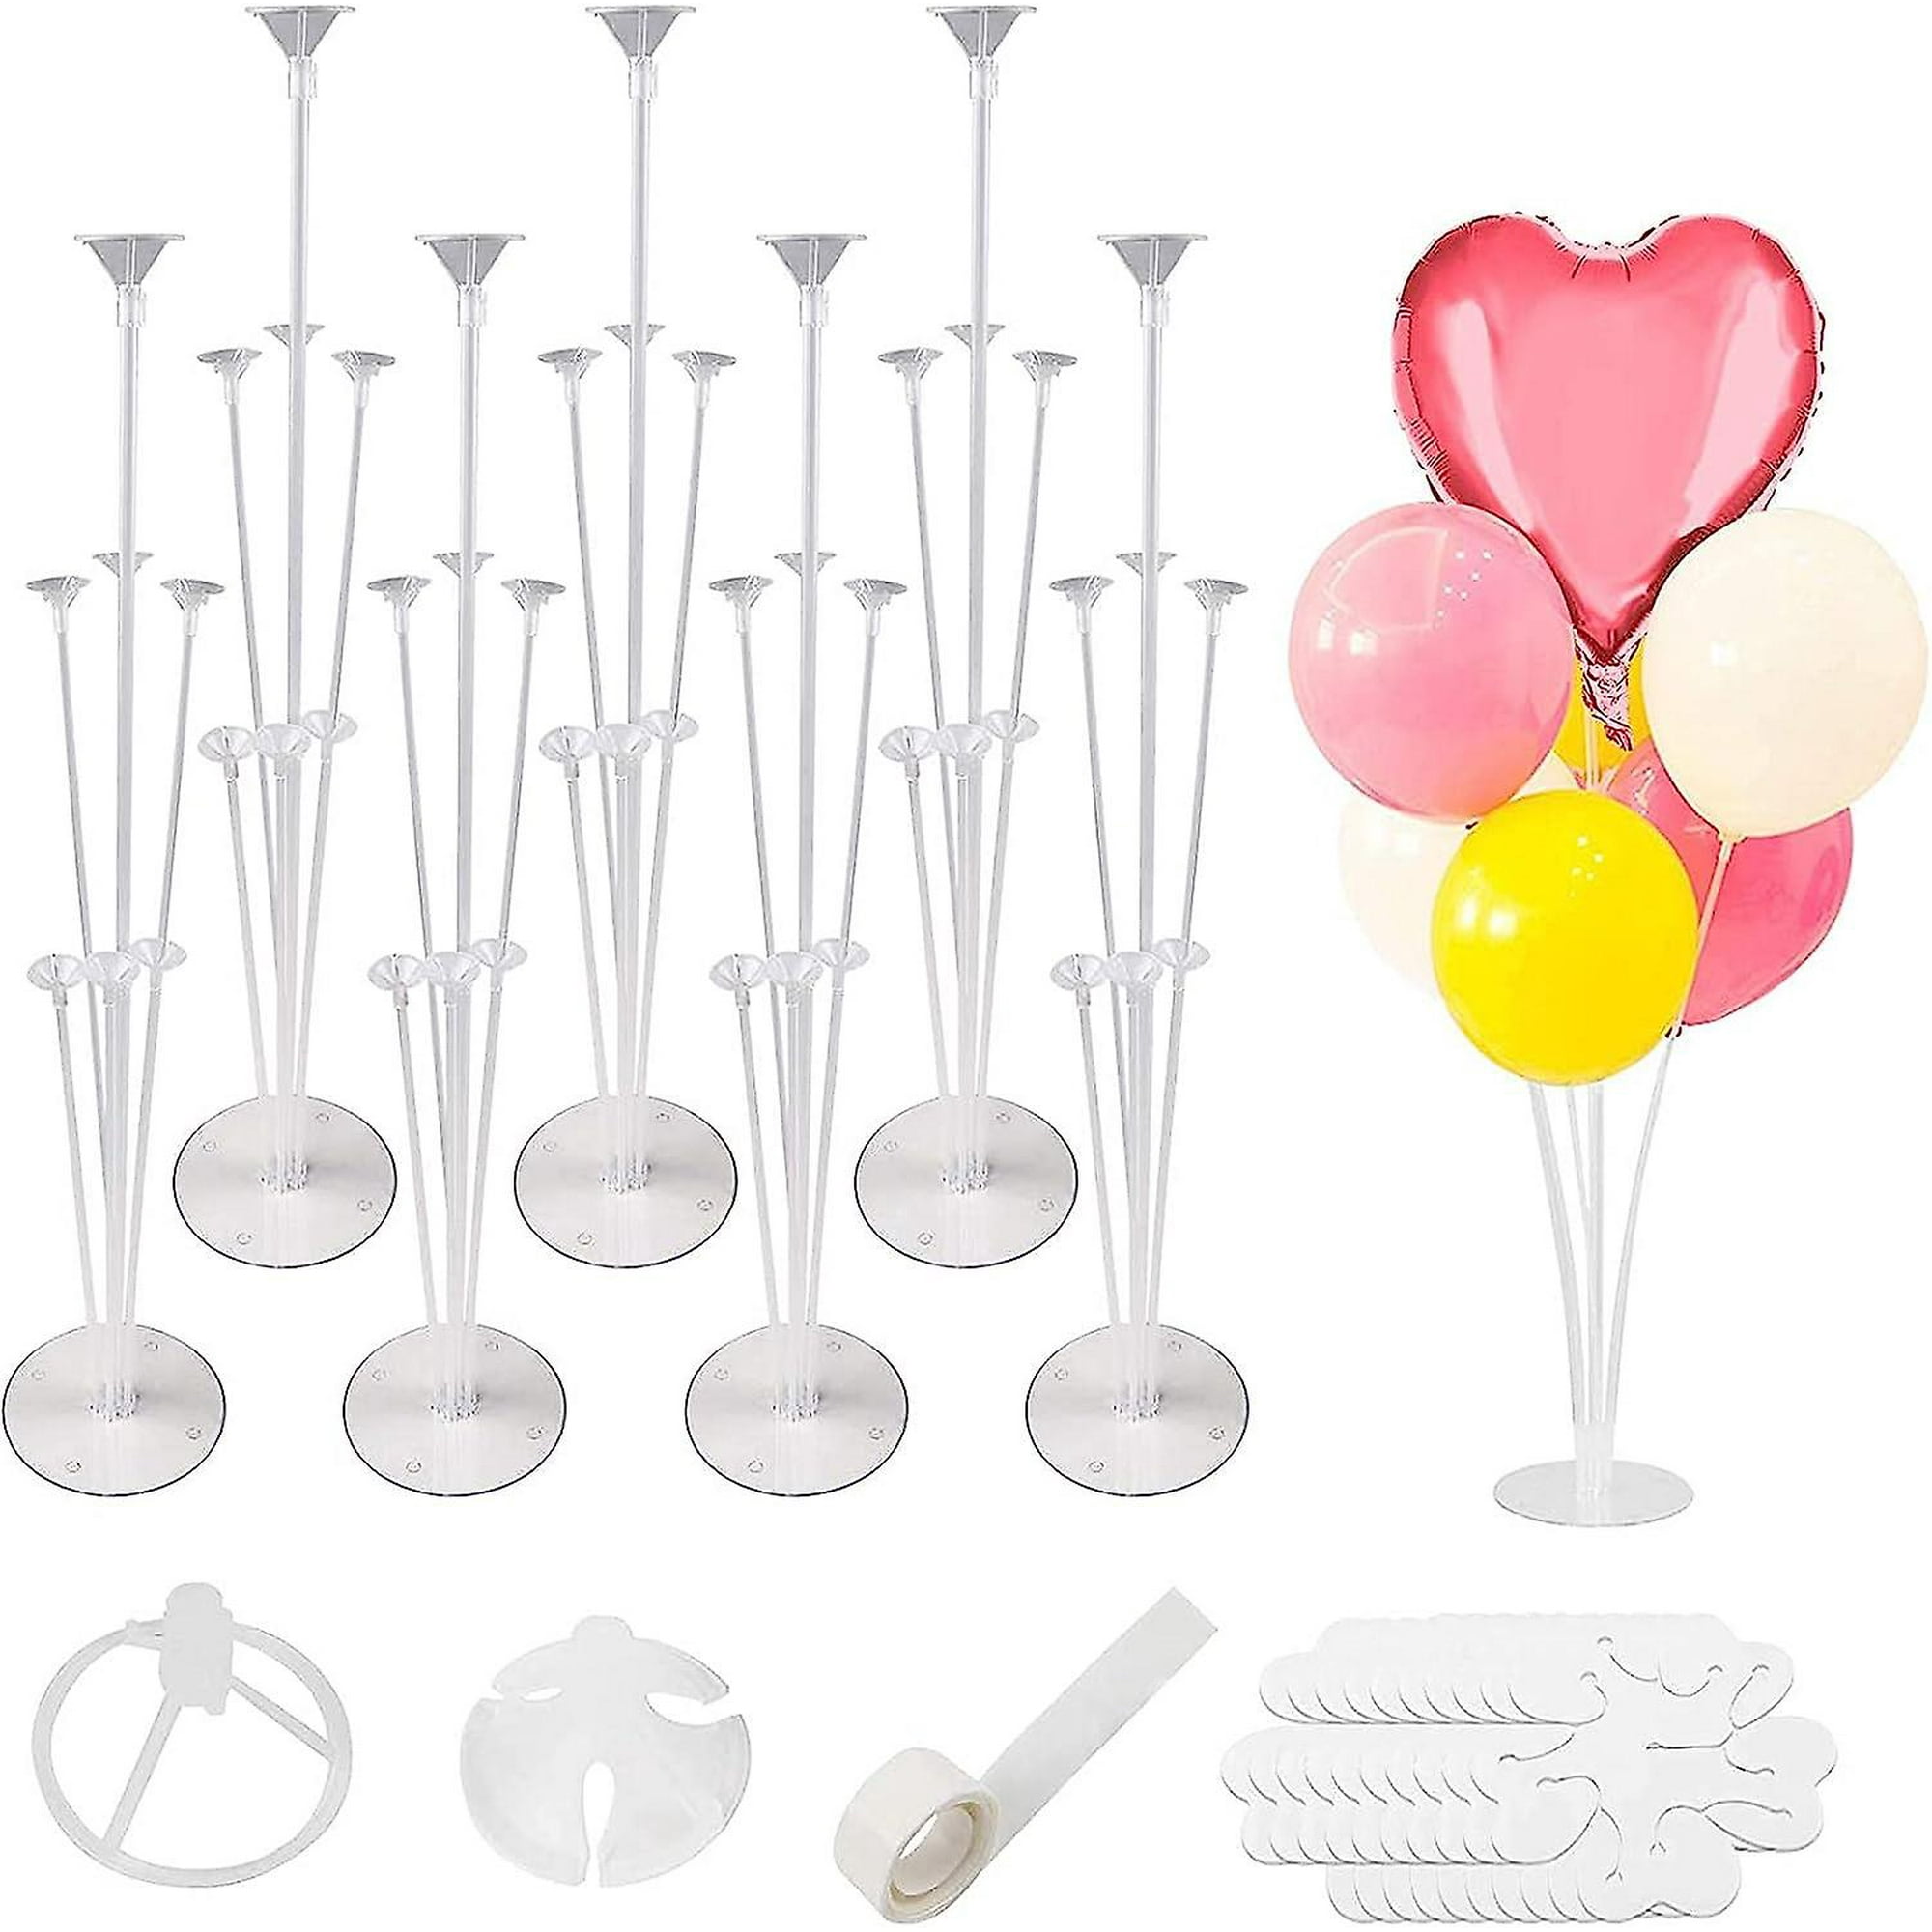  Kit de soporte para globos: 2 juegos de soporte transparente para  globos de escritorio con 7 palos para globos, 7 vasos para globos y 1 base de  globo para cumpleaños, fiesta